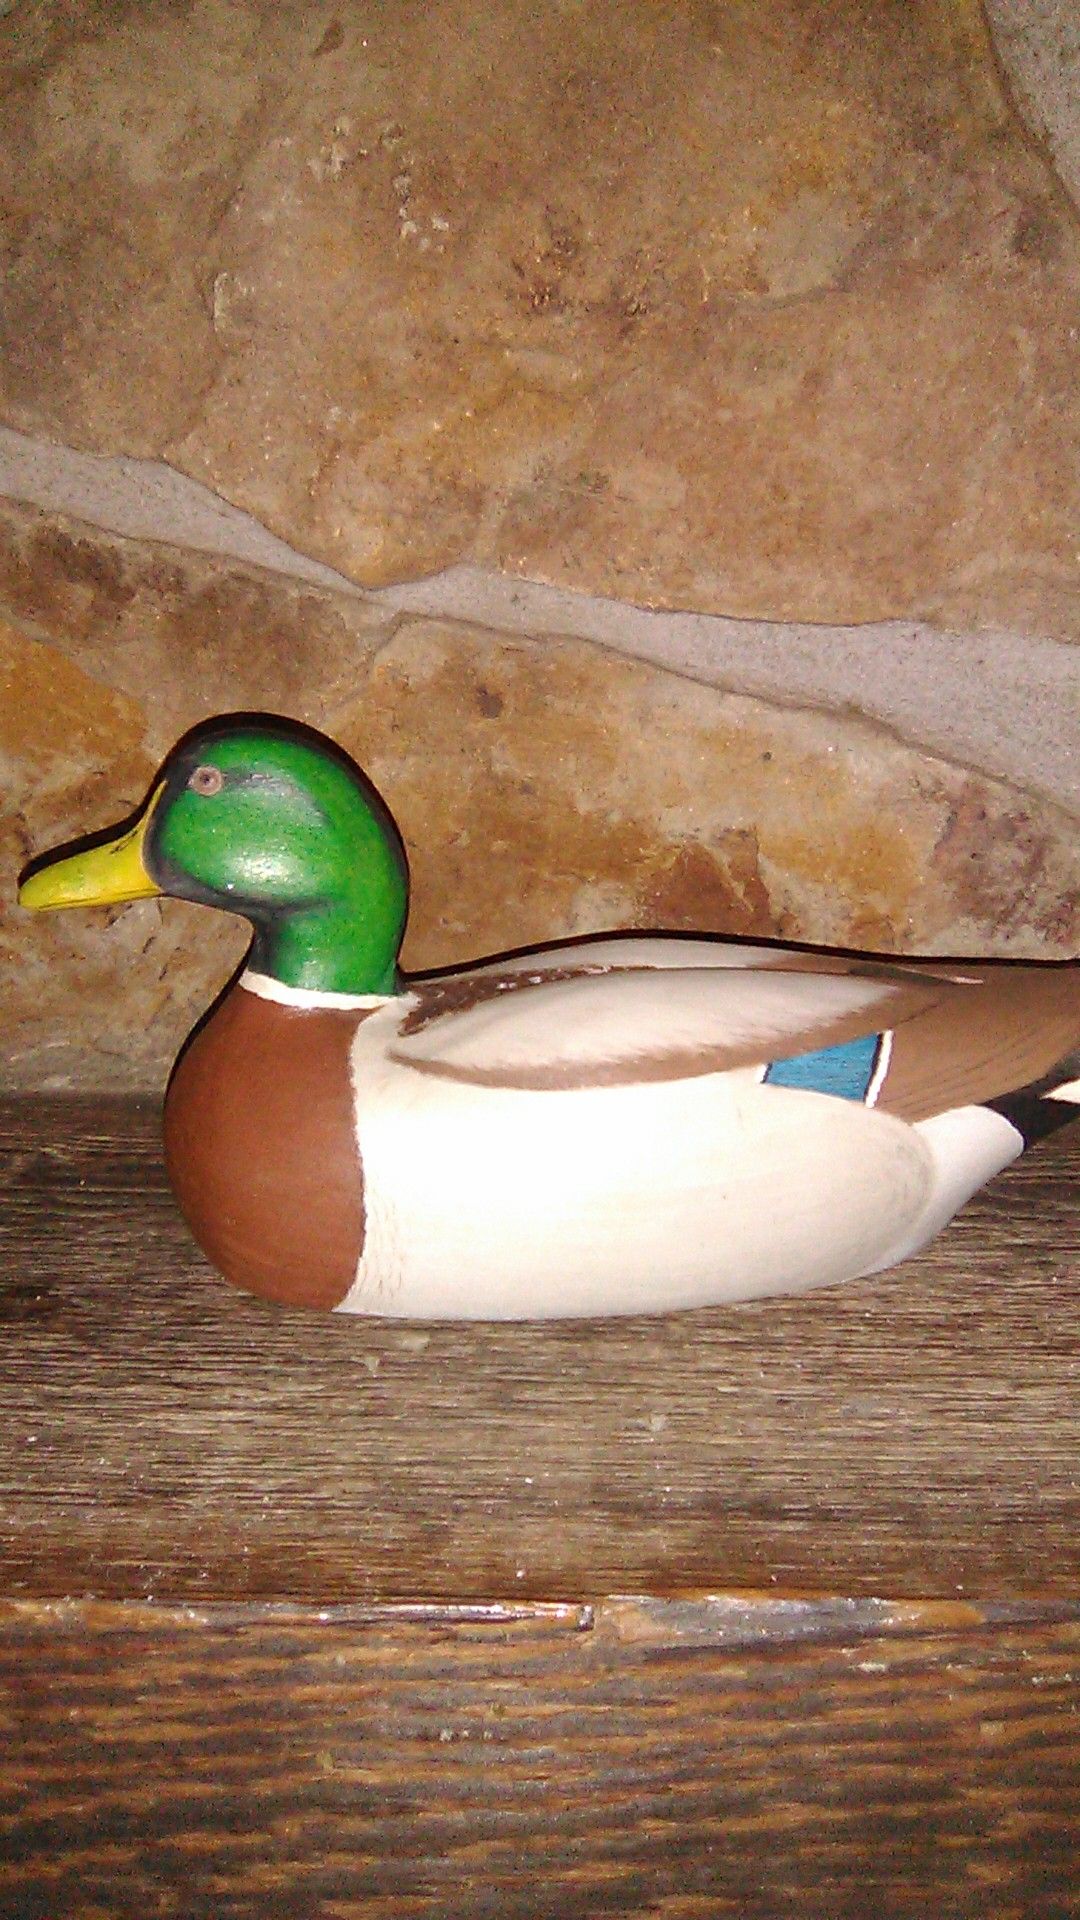 Handcrafted wooden duck